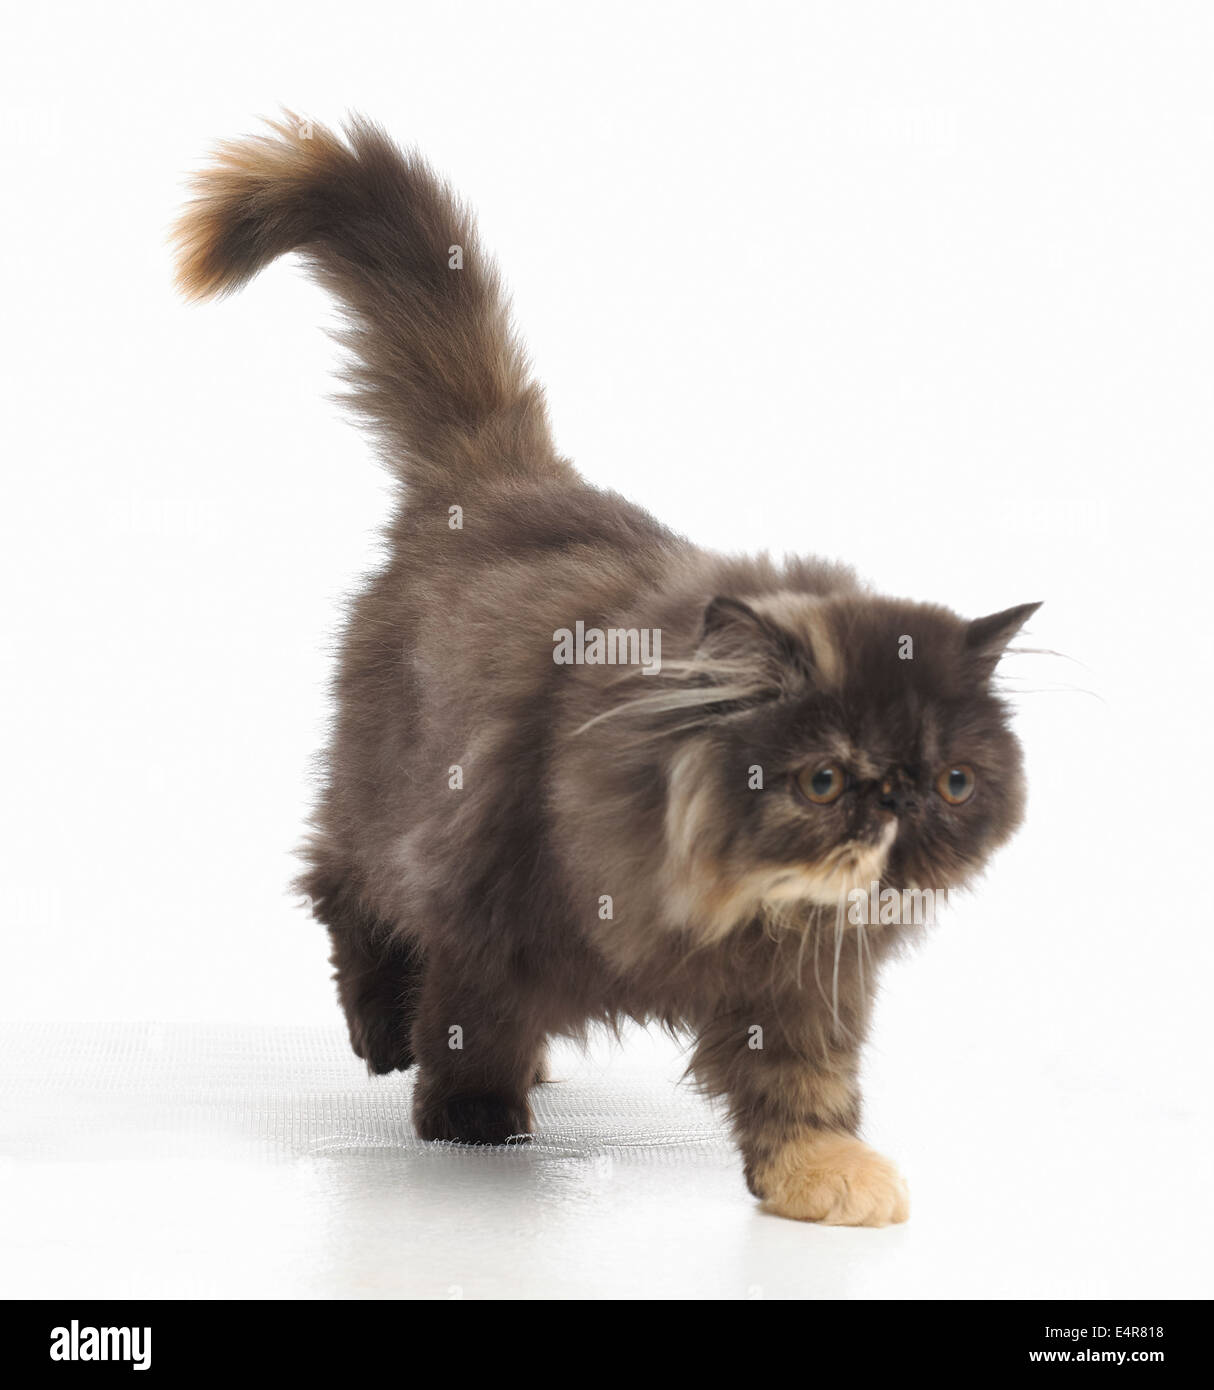 Persian kitten, 20-week-old Stock Photo